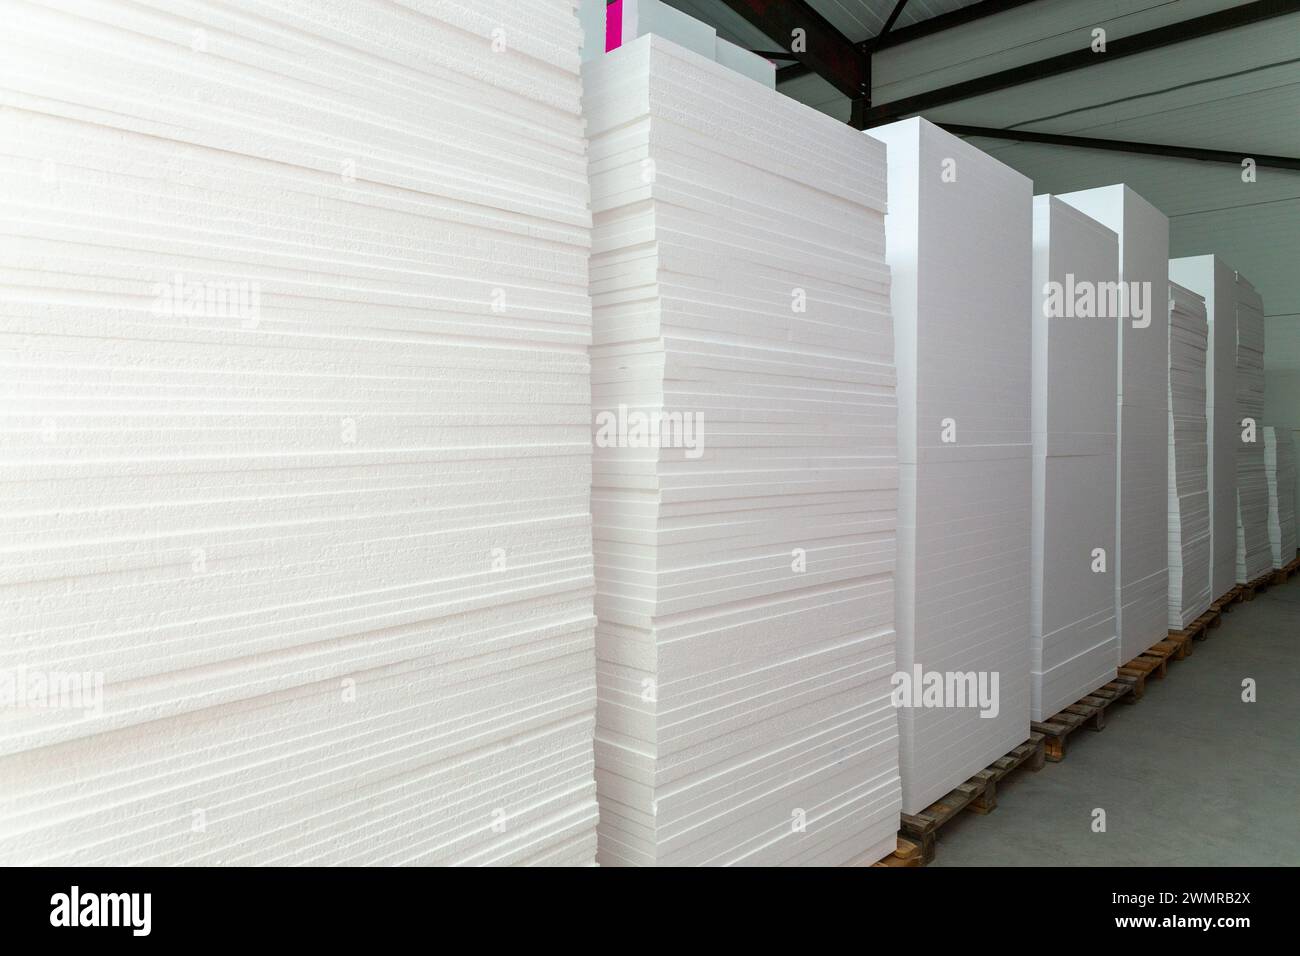 De grands blocs de polystyrène sont empilés dans un entrepôt. Production industrielle de panneaux ou plaques isolants en mousse de polystyrène à partir de polystyrène expansé Banque D'Images